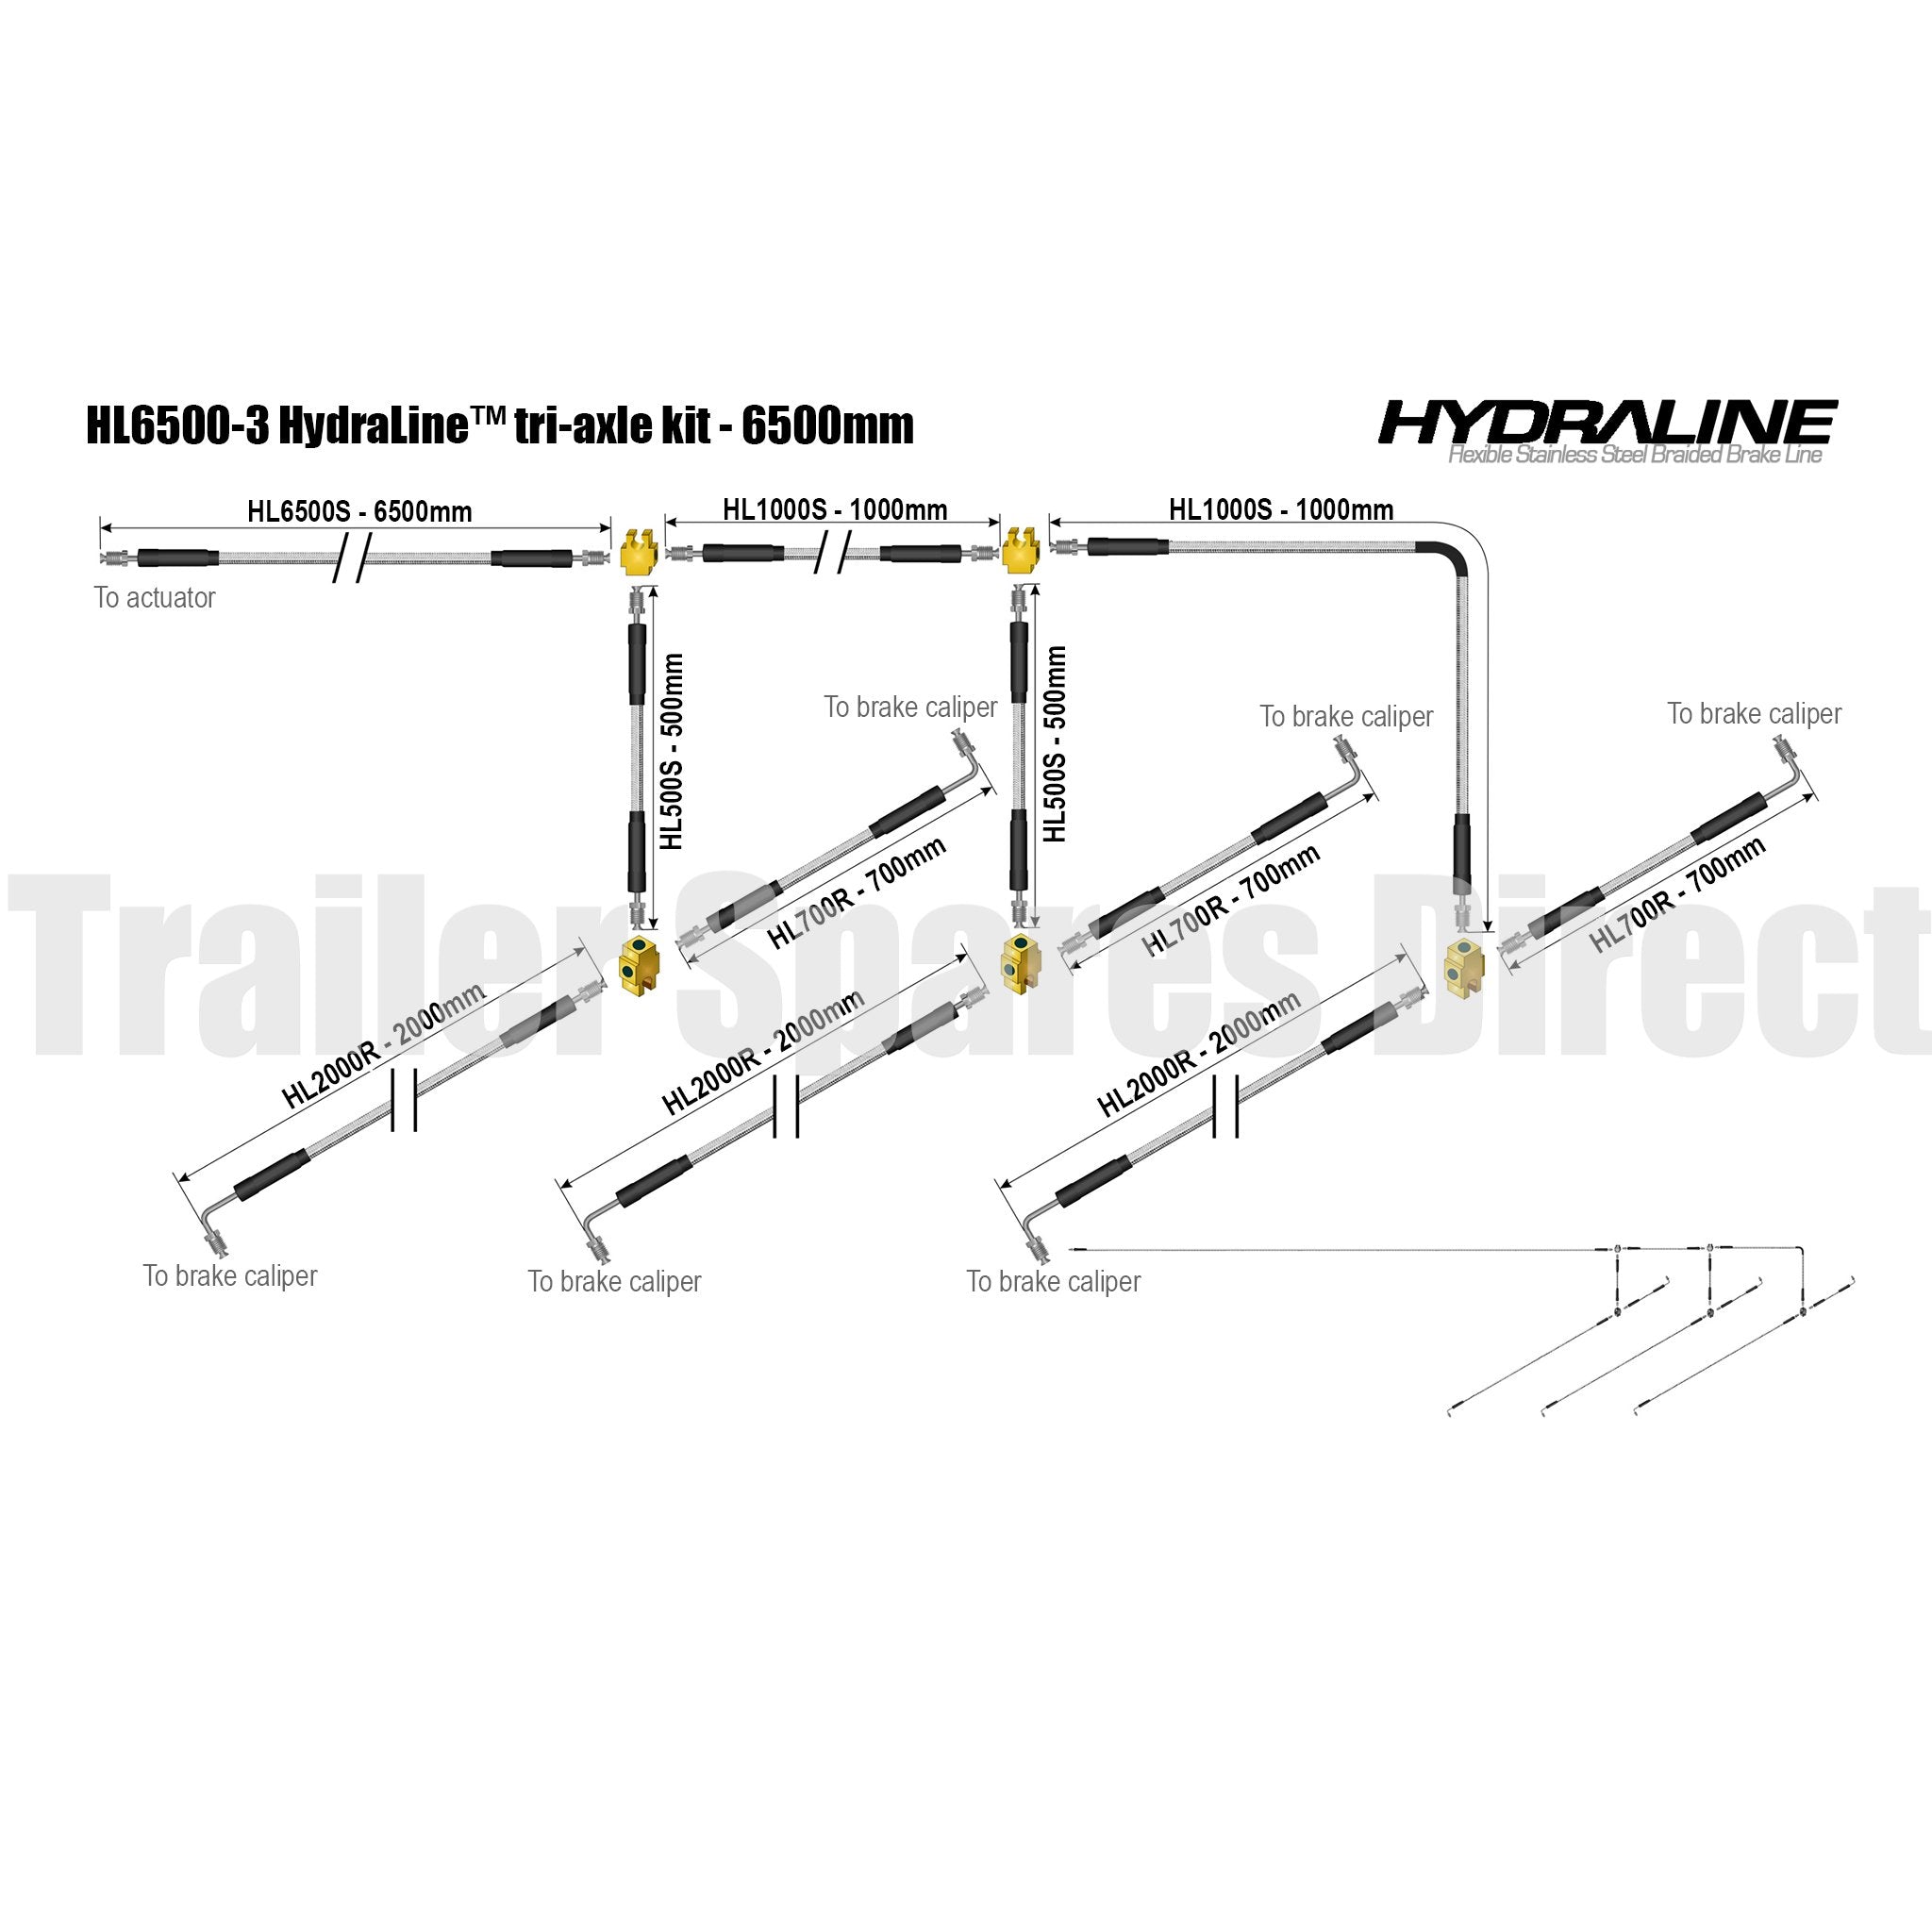 Hydraline kit 6500mm tri-axle diagram